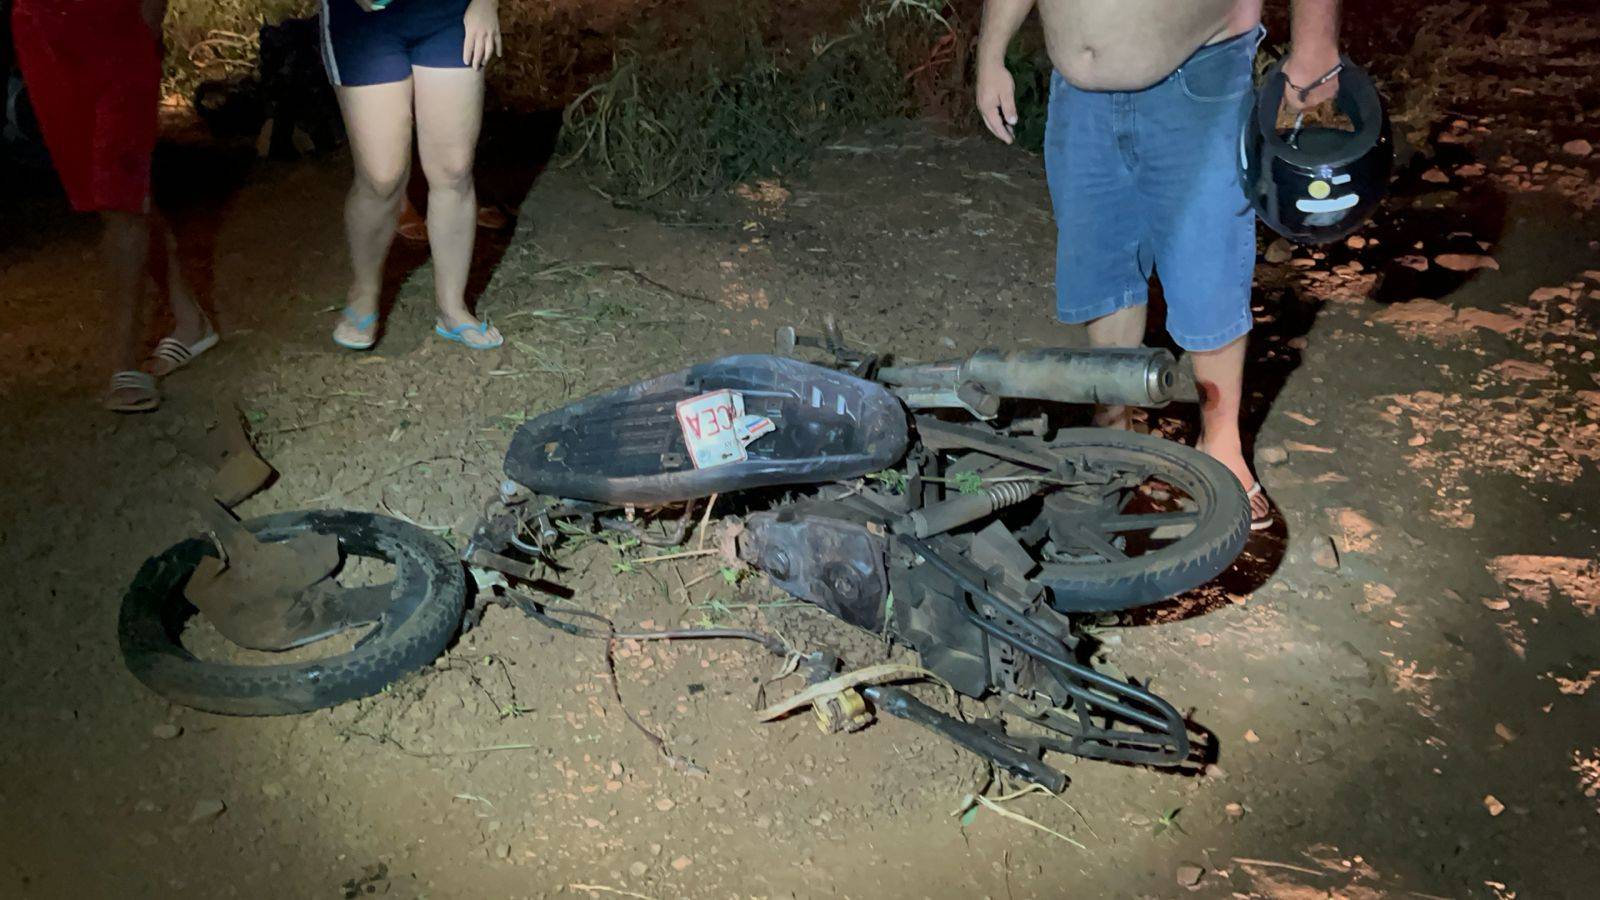 Jovem de 21 anos morre em grave acidente de trânsito na área rural de Foz do Iguaçu